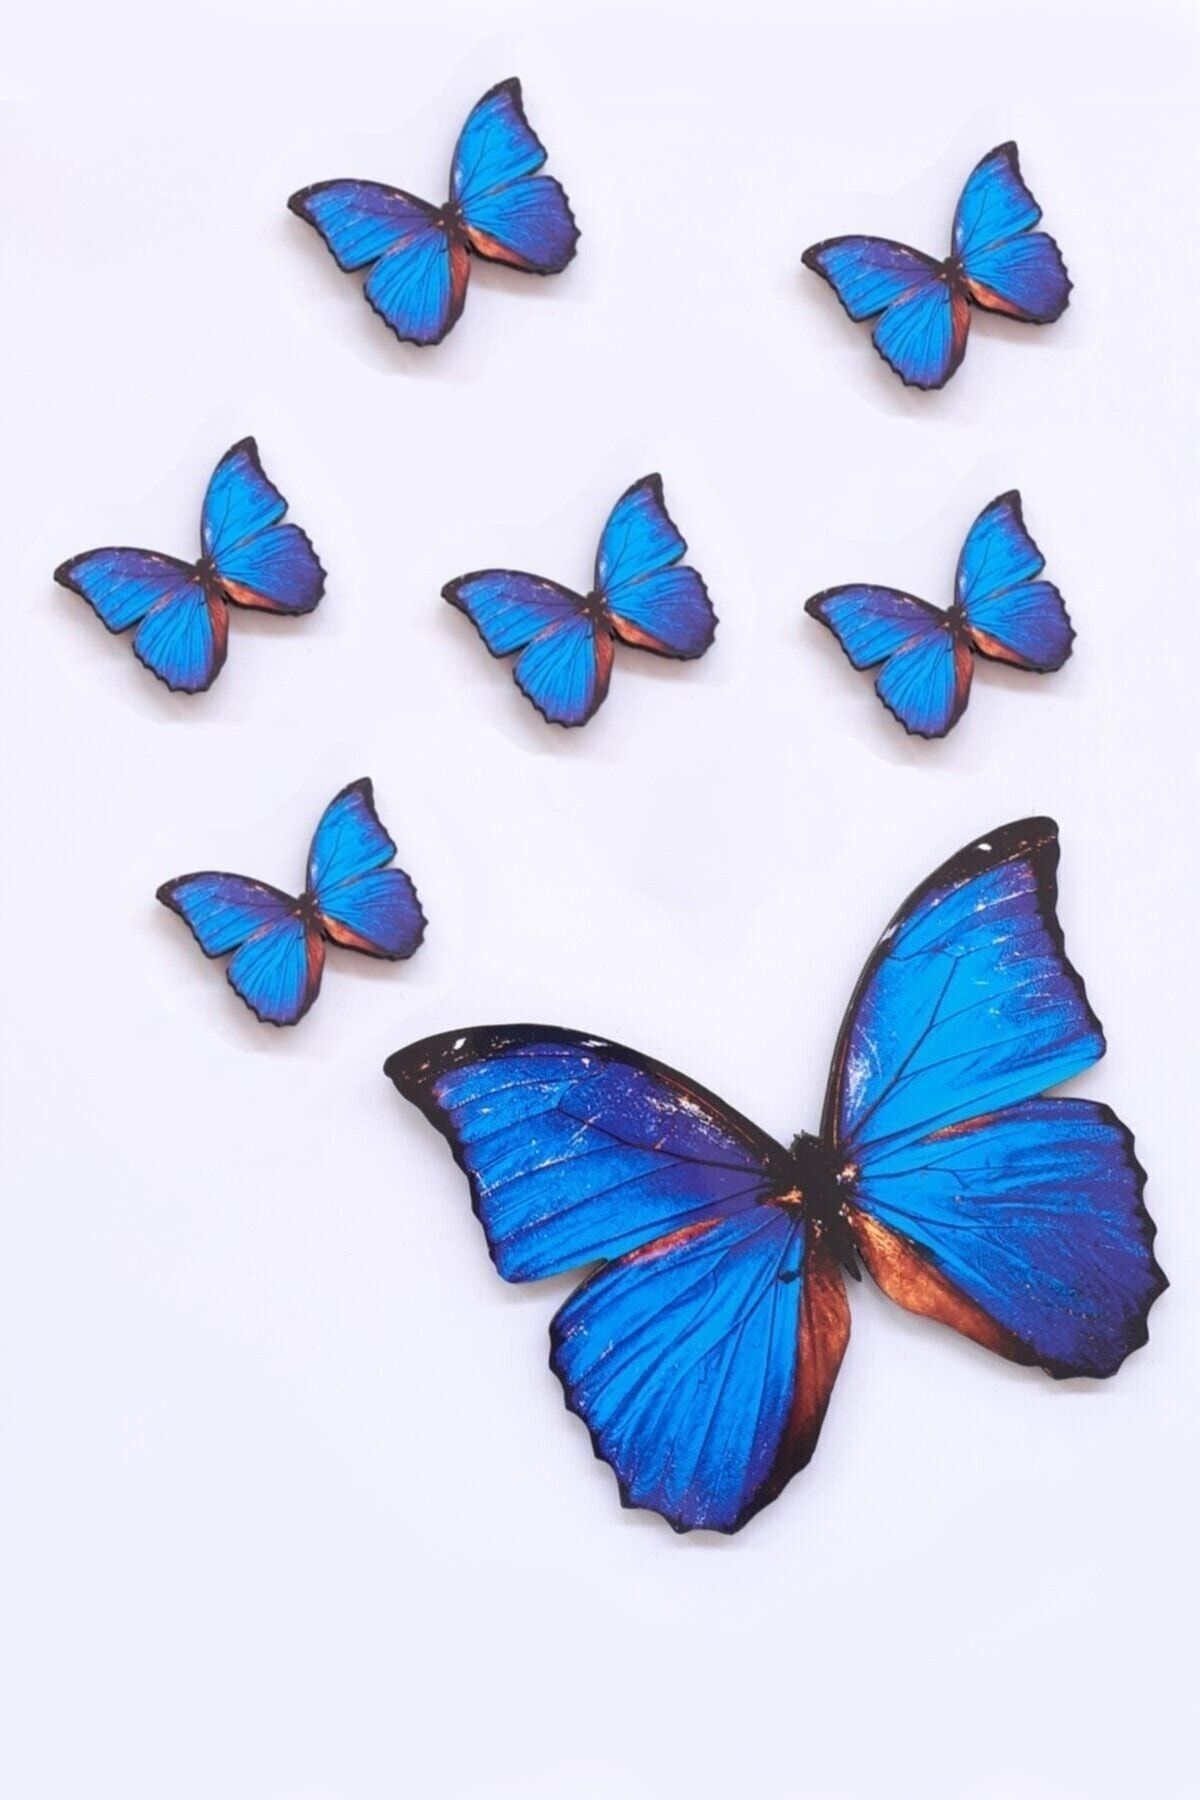 AKIN AKSESUAR HEDİYELİK Kelebek Figürlü 6 Parça Mavi Ahşap Duvar Yapıştırma Süsü